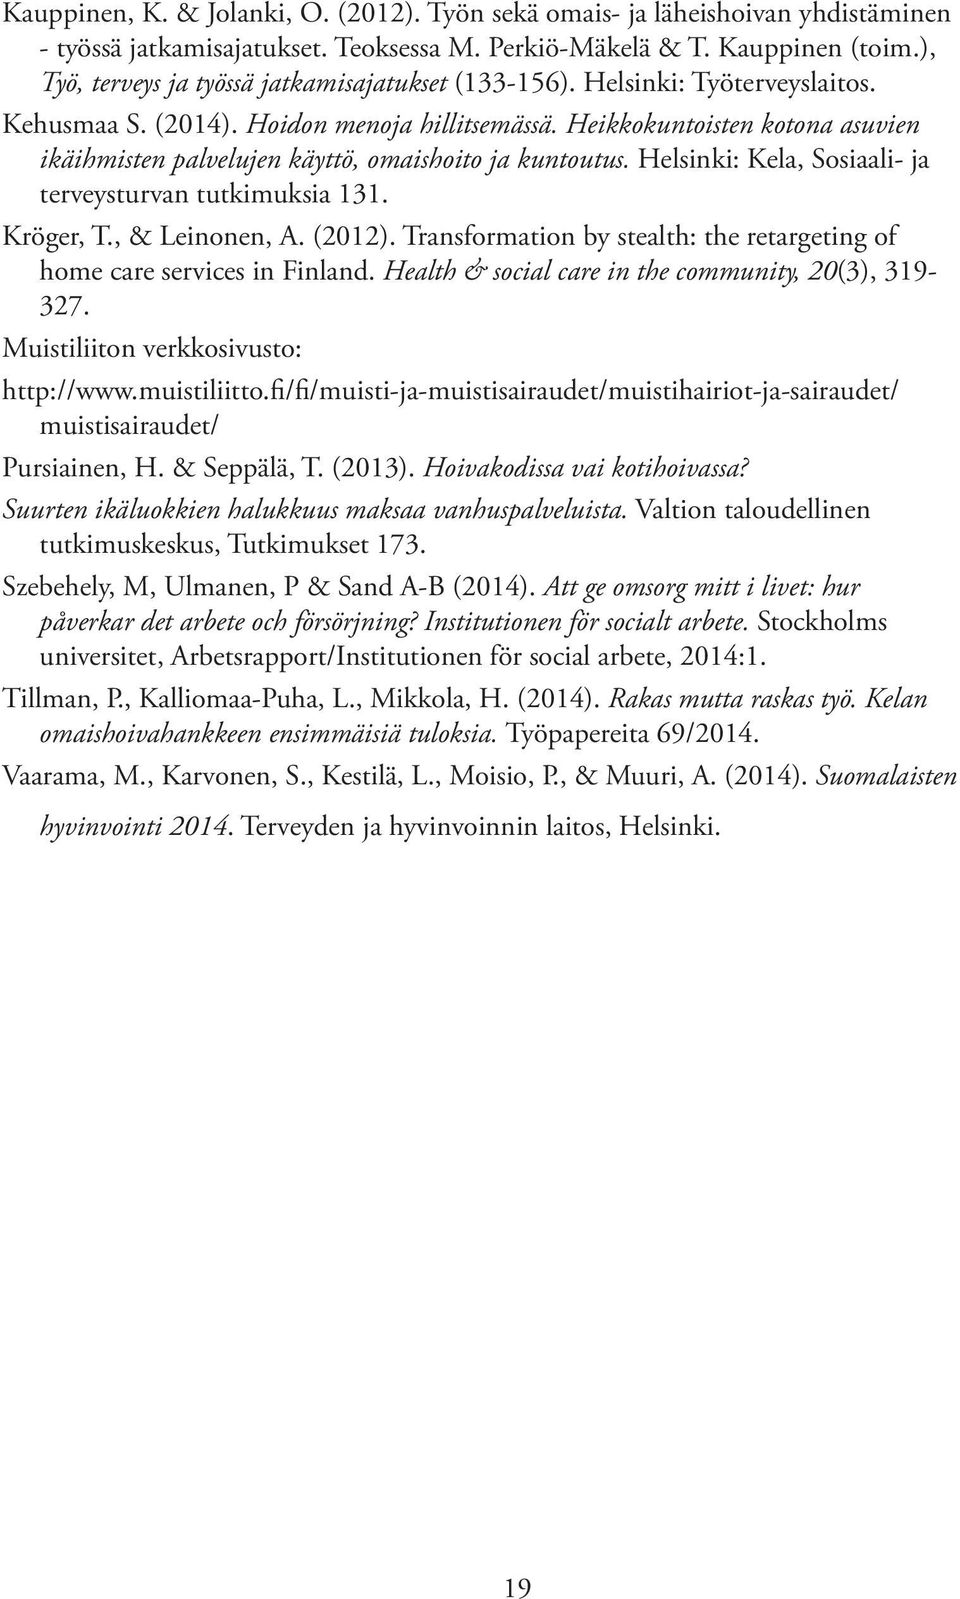 Heikkokuntoisten kotona asuvien ikäihmisten palvelujen käyttö, omaishoito ja kuntoutus. Helsinki: Kela, Sosiaali- ja terveysturvan tutkimuksia 131. Kröger, T., & Leinonen, A. (2012).